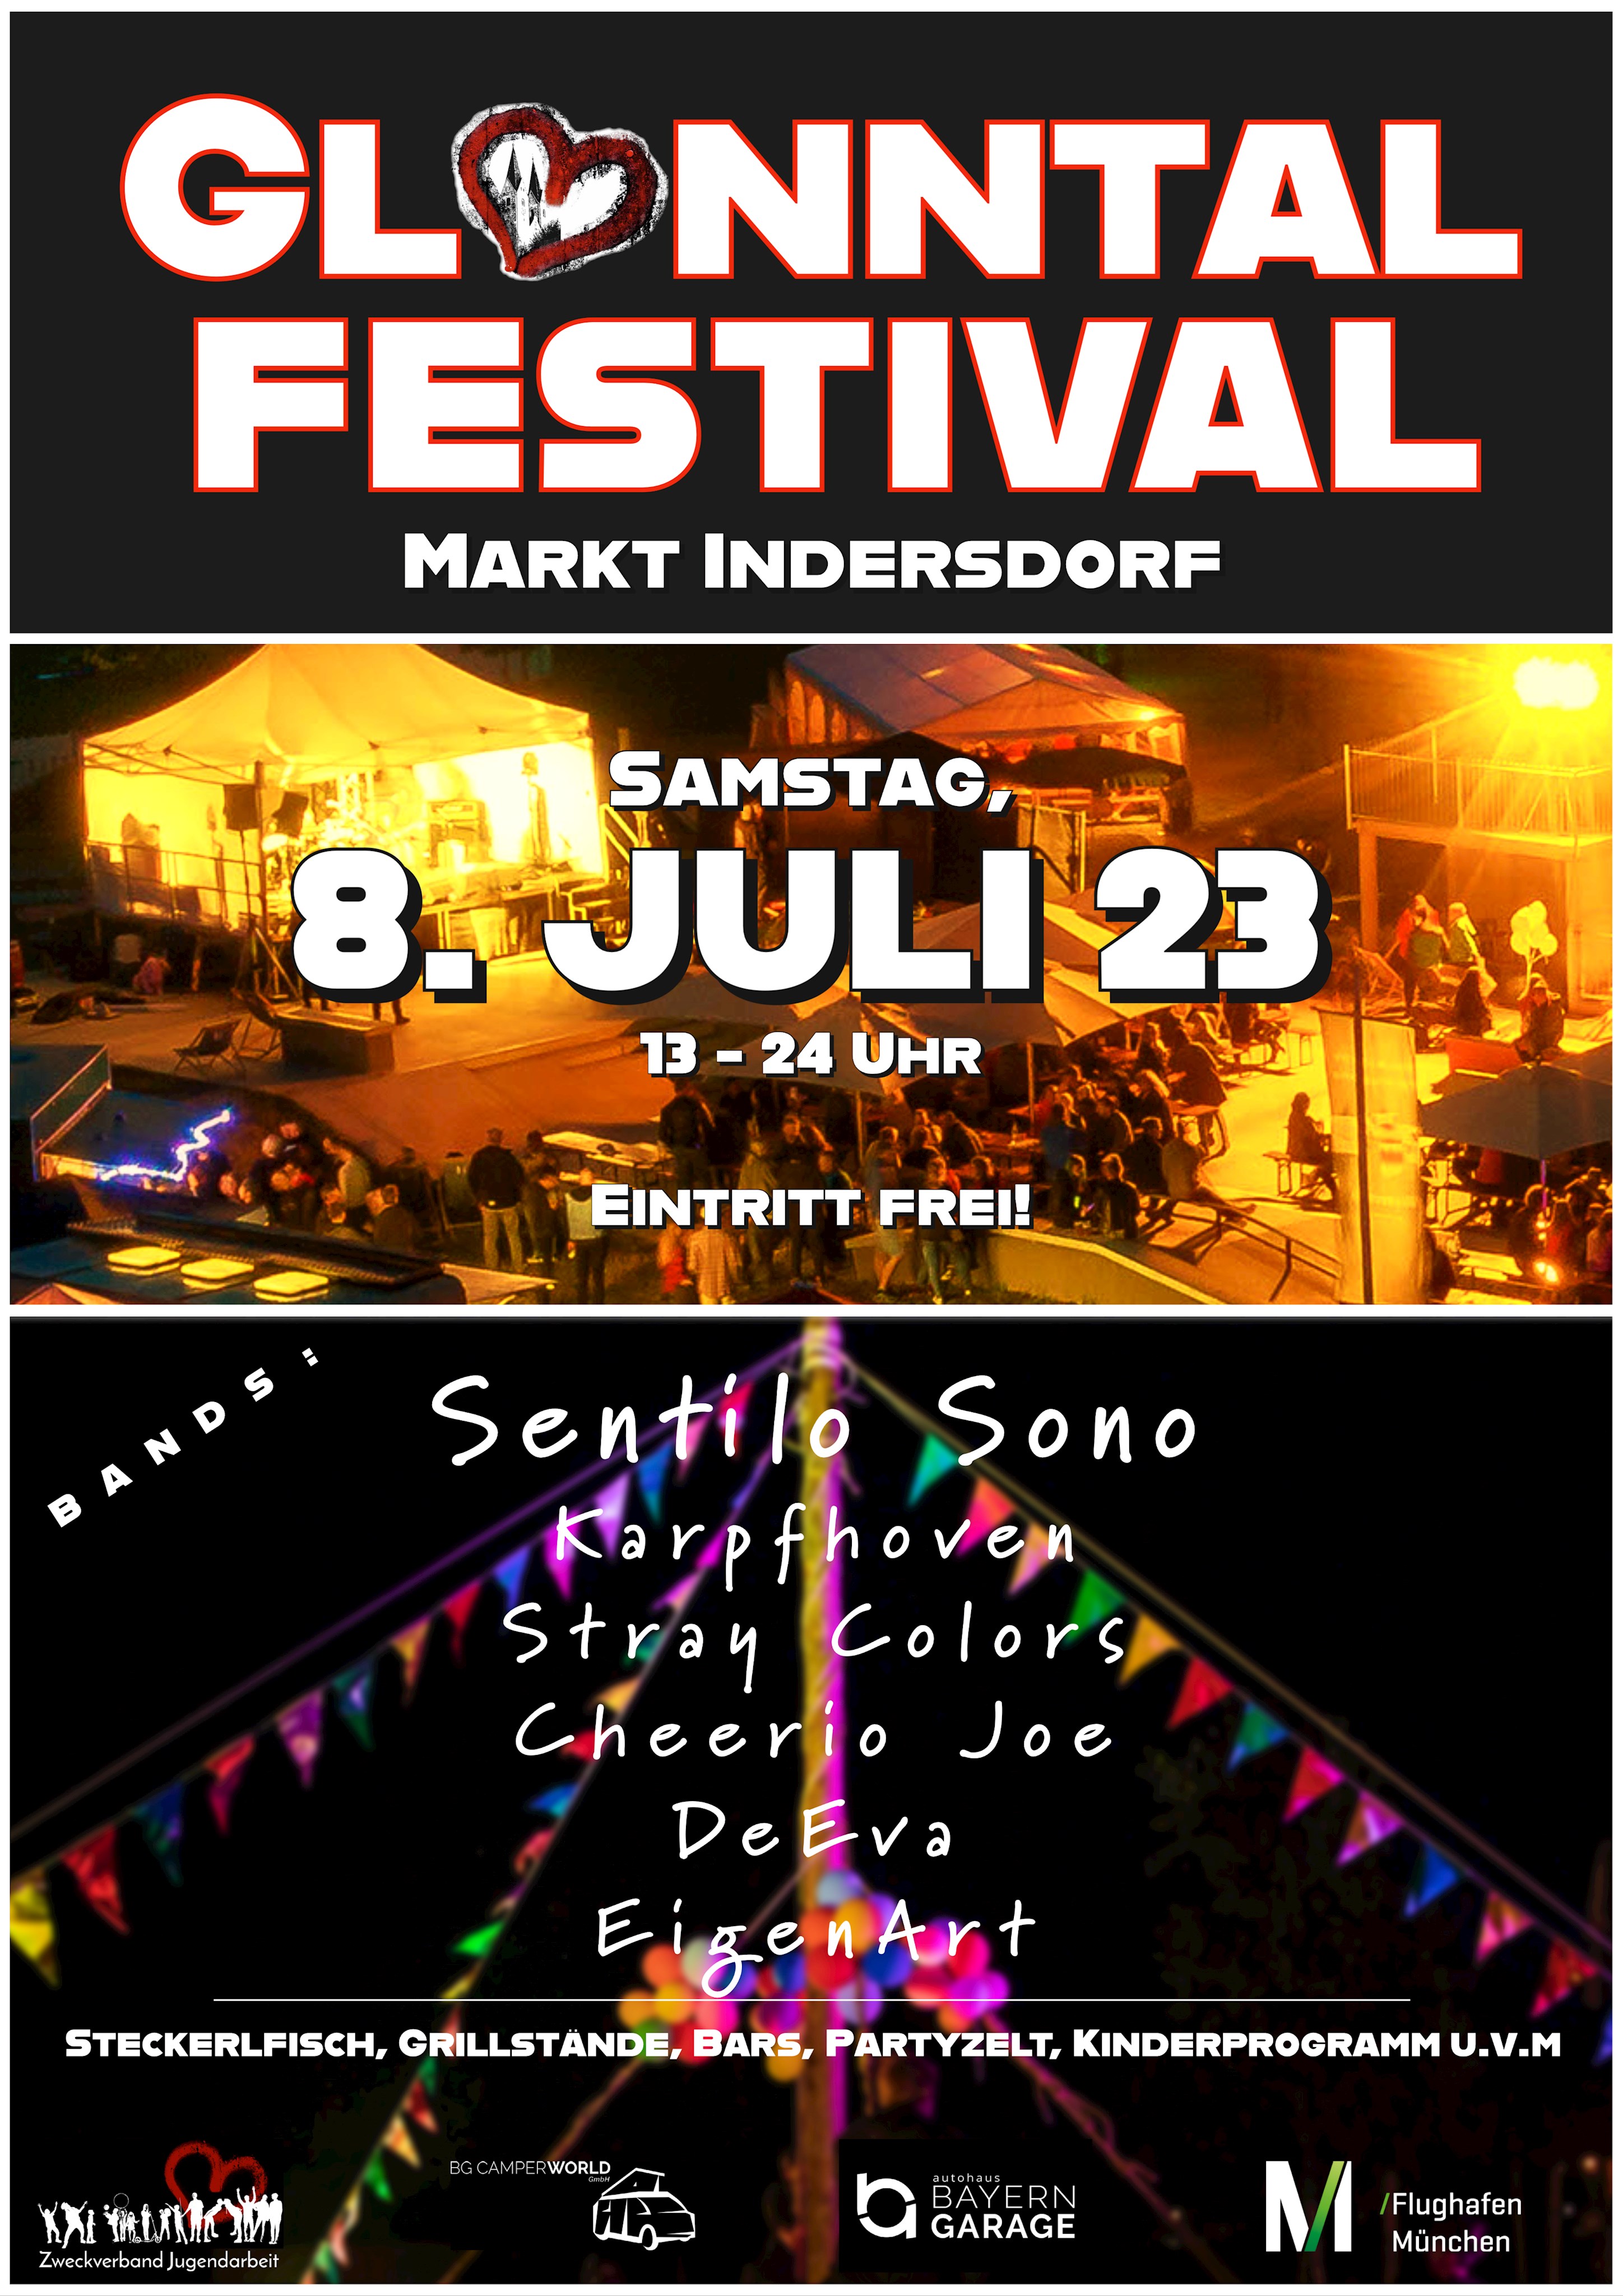 Das 4. Glonntal Festival in Markt Indersdorf: Ein buntes, kostenloses Open-Air-Erlebnis für die ganze Familie am 8. Juli 23